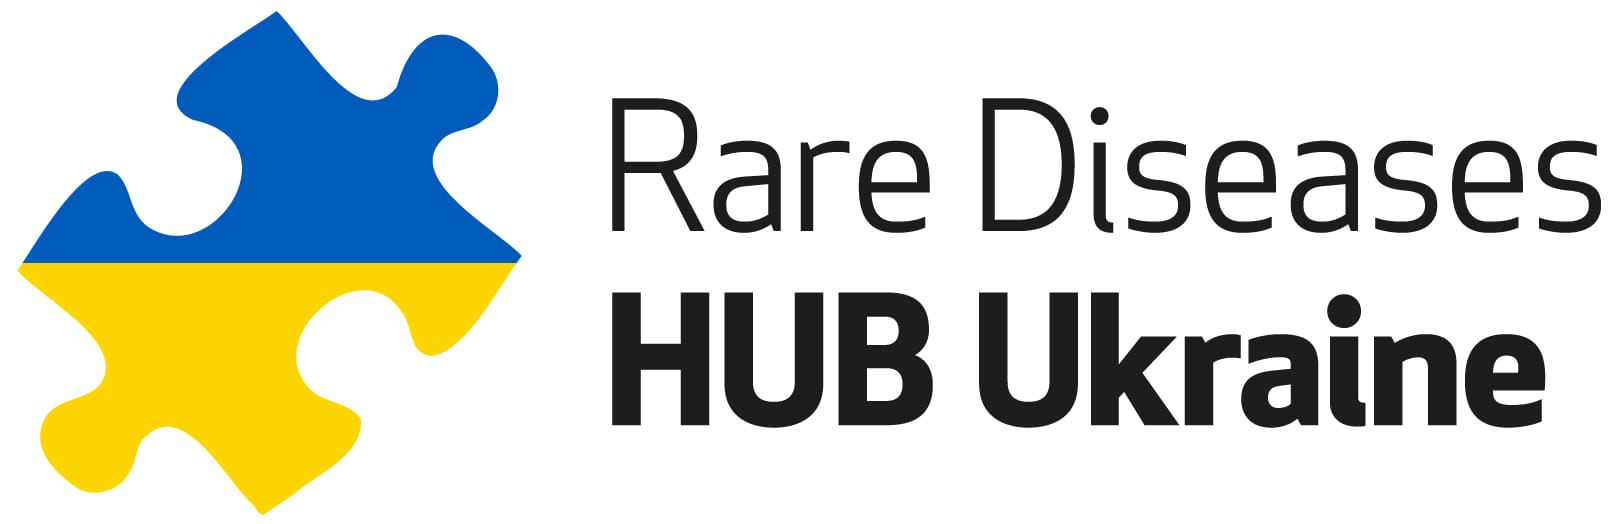 Запрацював Rare Diseases Hub Ukraine